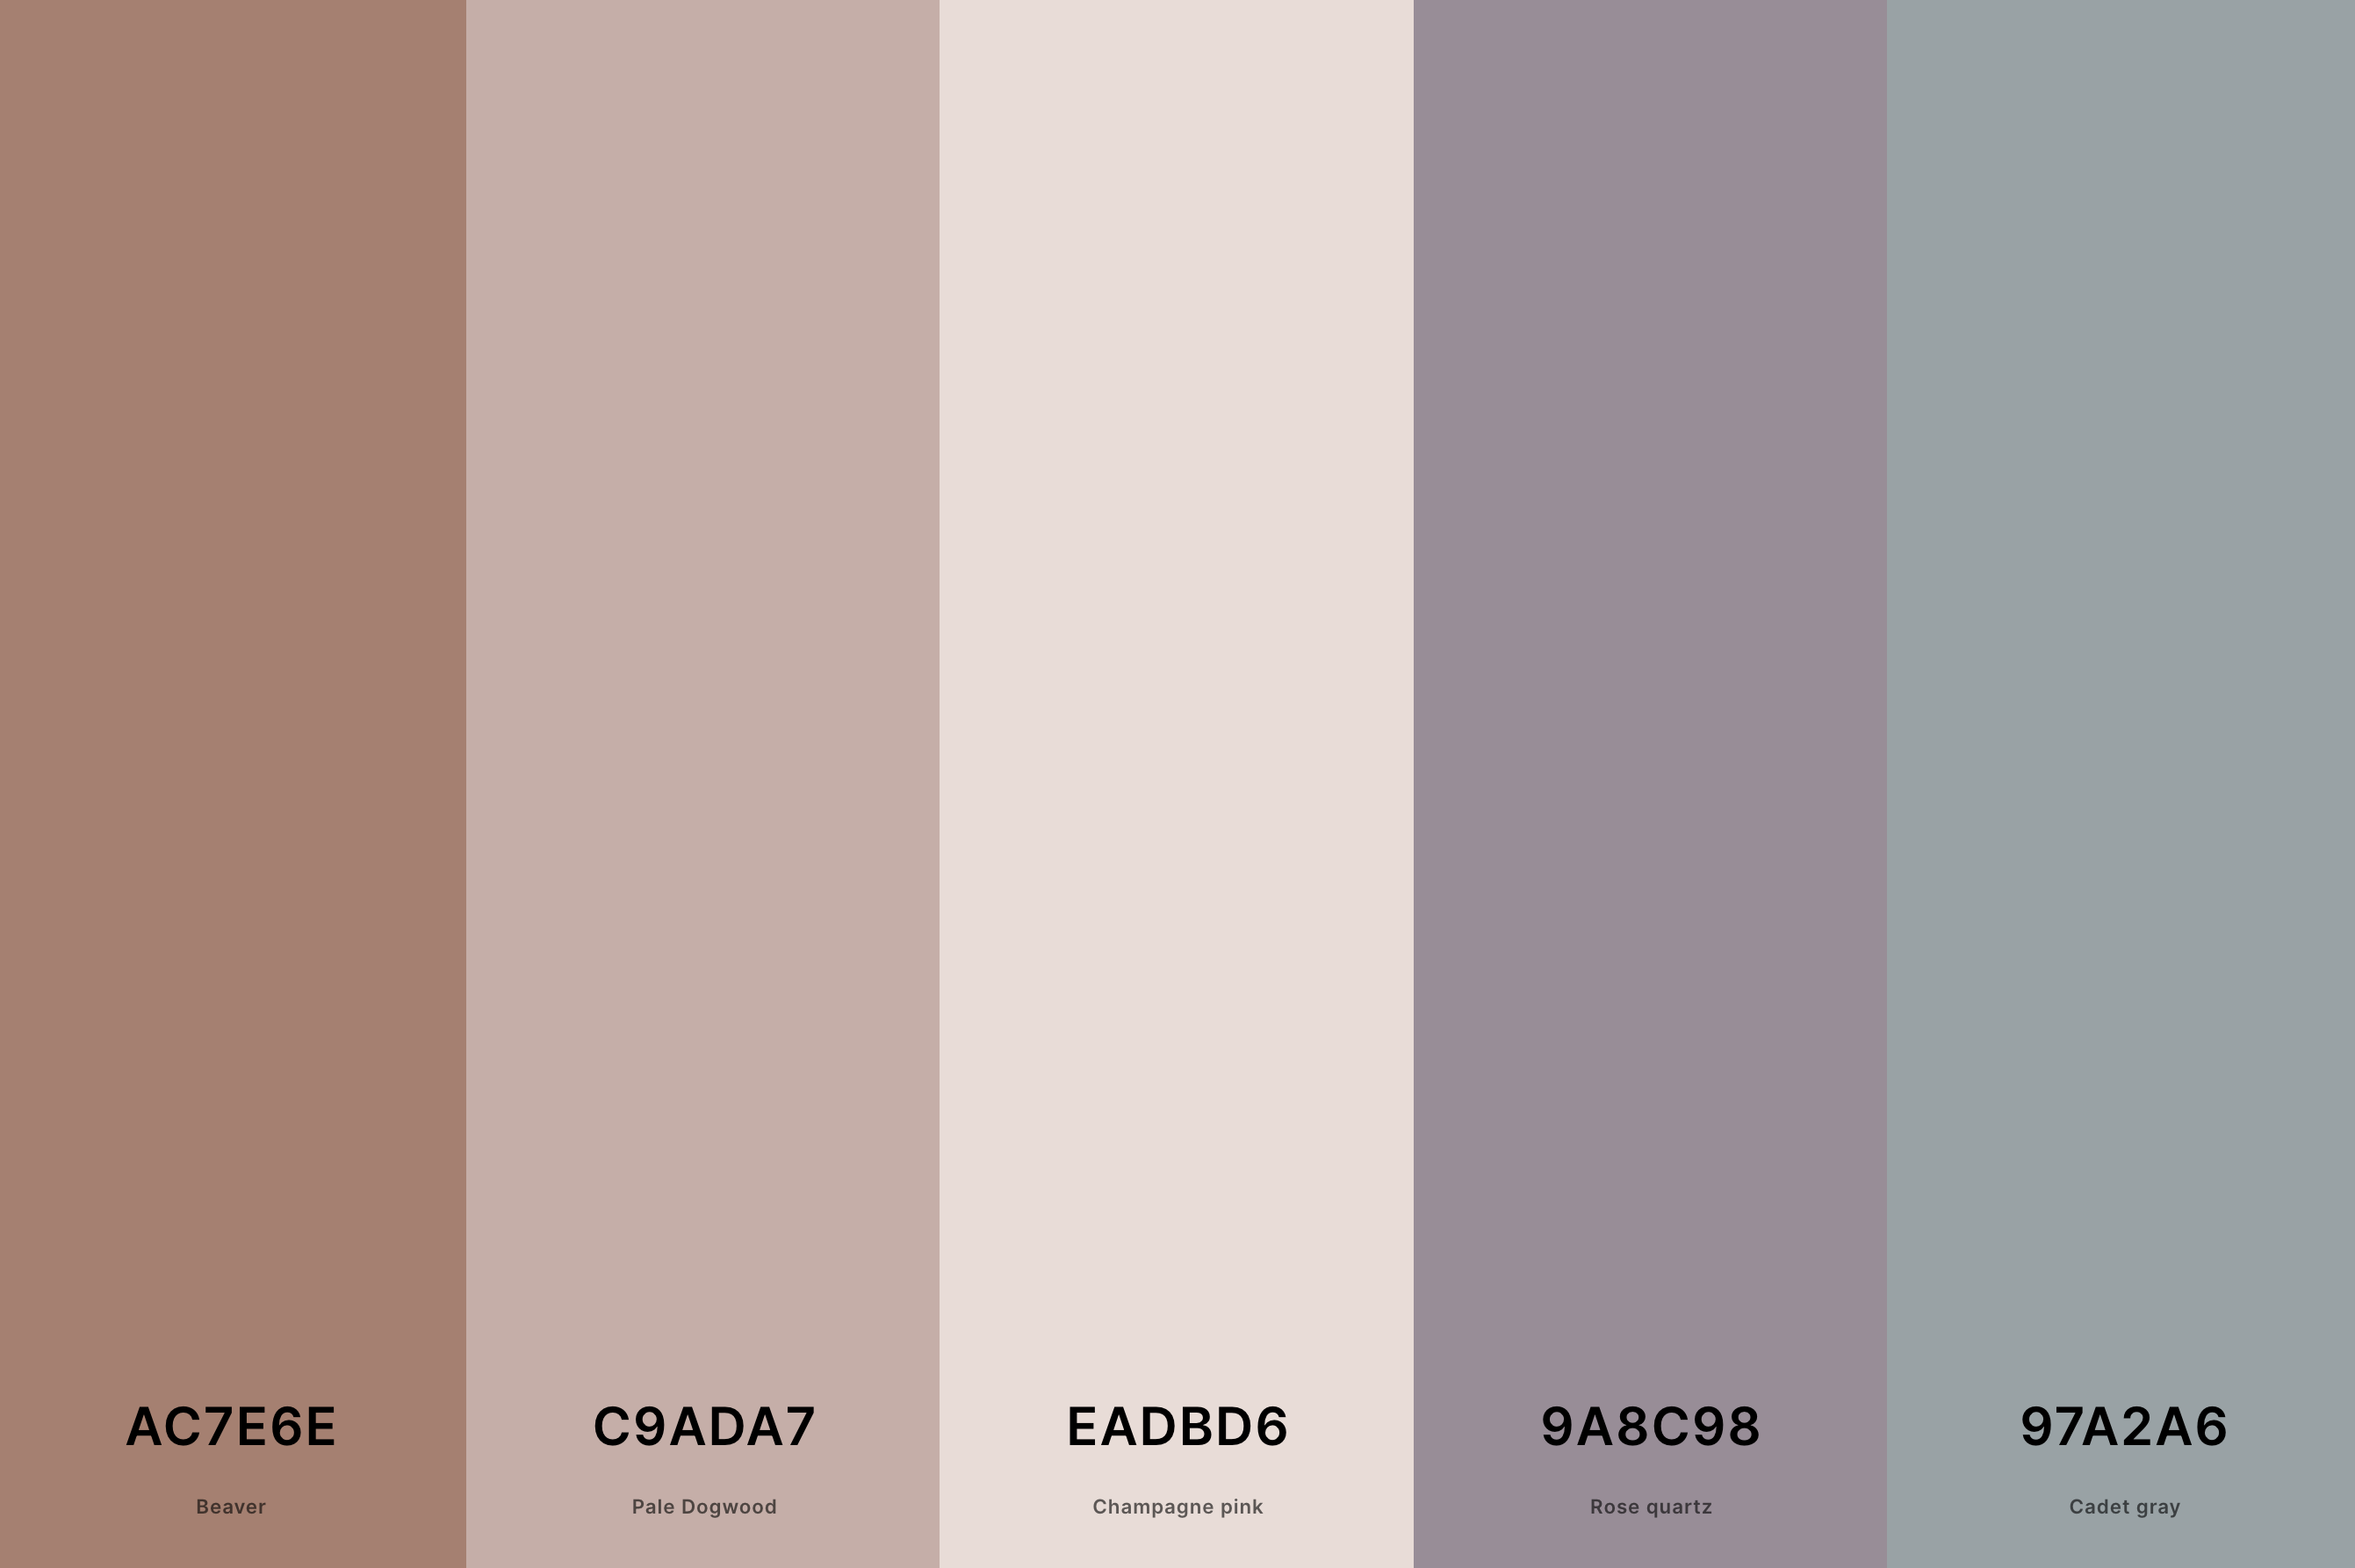 3. Soft Aesthetic Color Palette Color Palette with Beaver (Hex #AC7E6E) + Pale Dogwood (Hex #C9ADA7) + Champagne Pink (Hex #EADBD6) + Rose Quartz (Hex #9A8C98) + Cadet Gray (Hex #97A2A6) Color Palette with Hex Codes